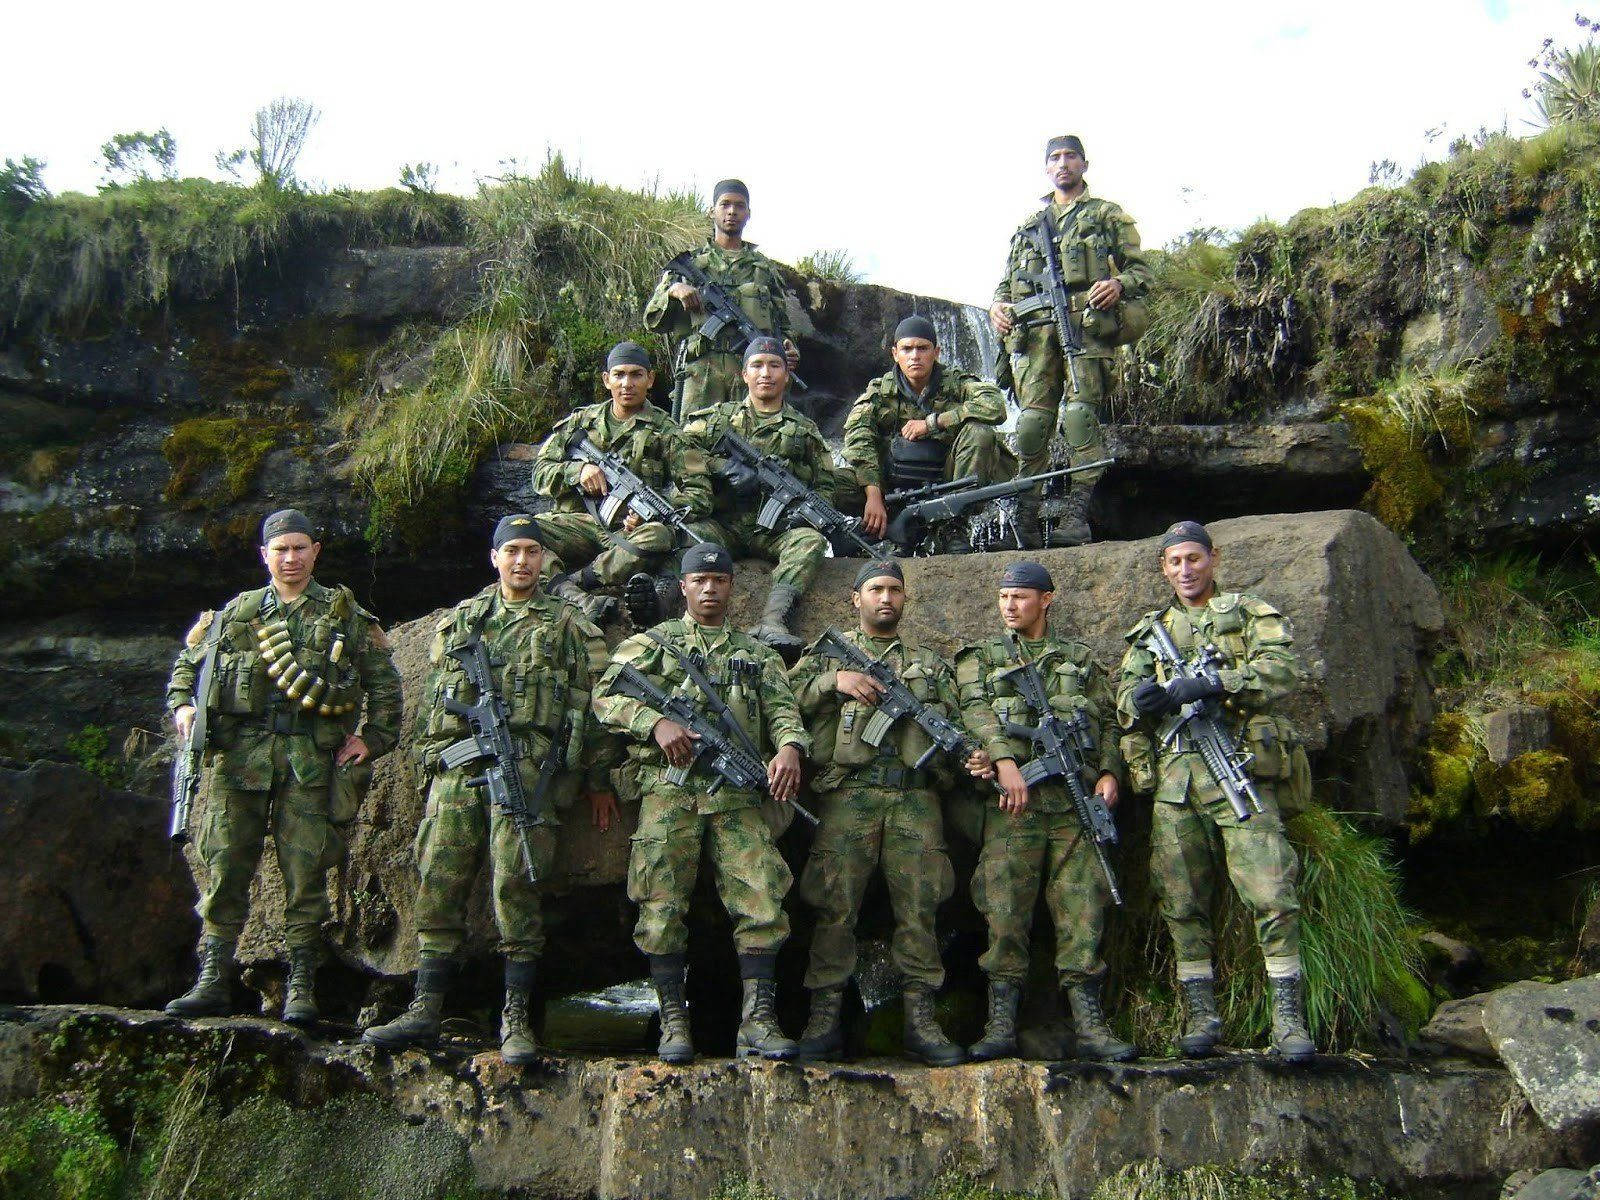 Para Commandos Posing